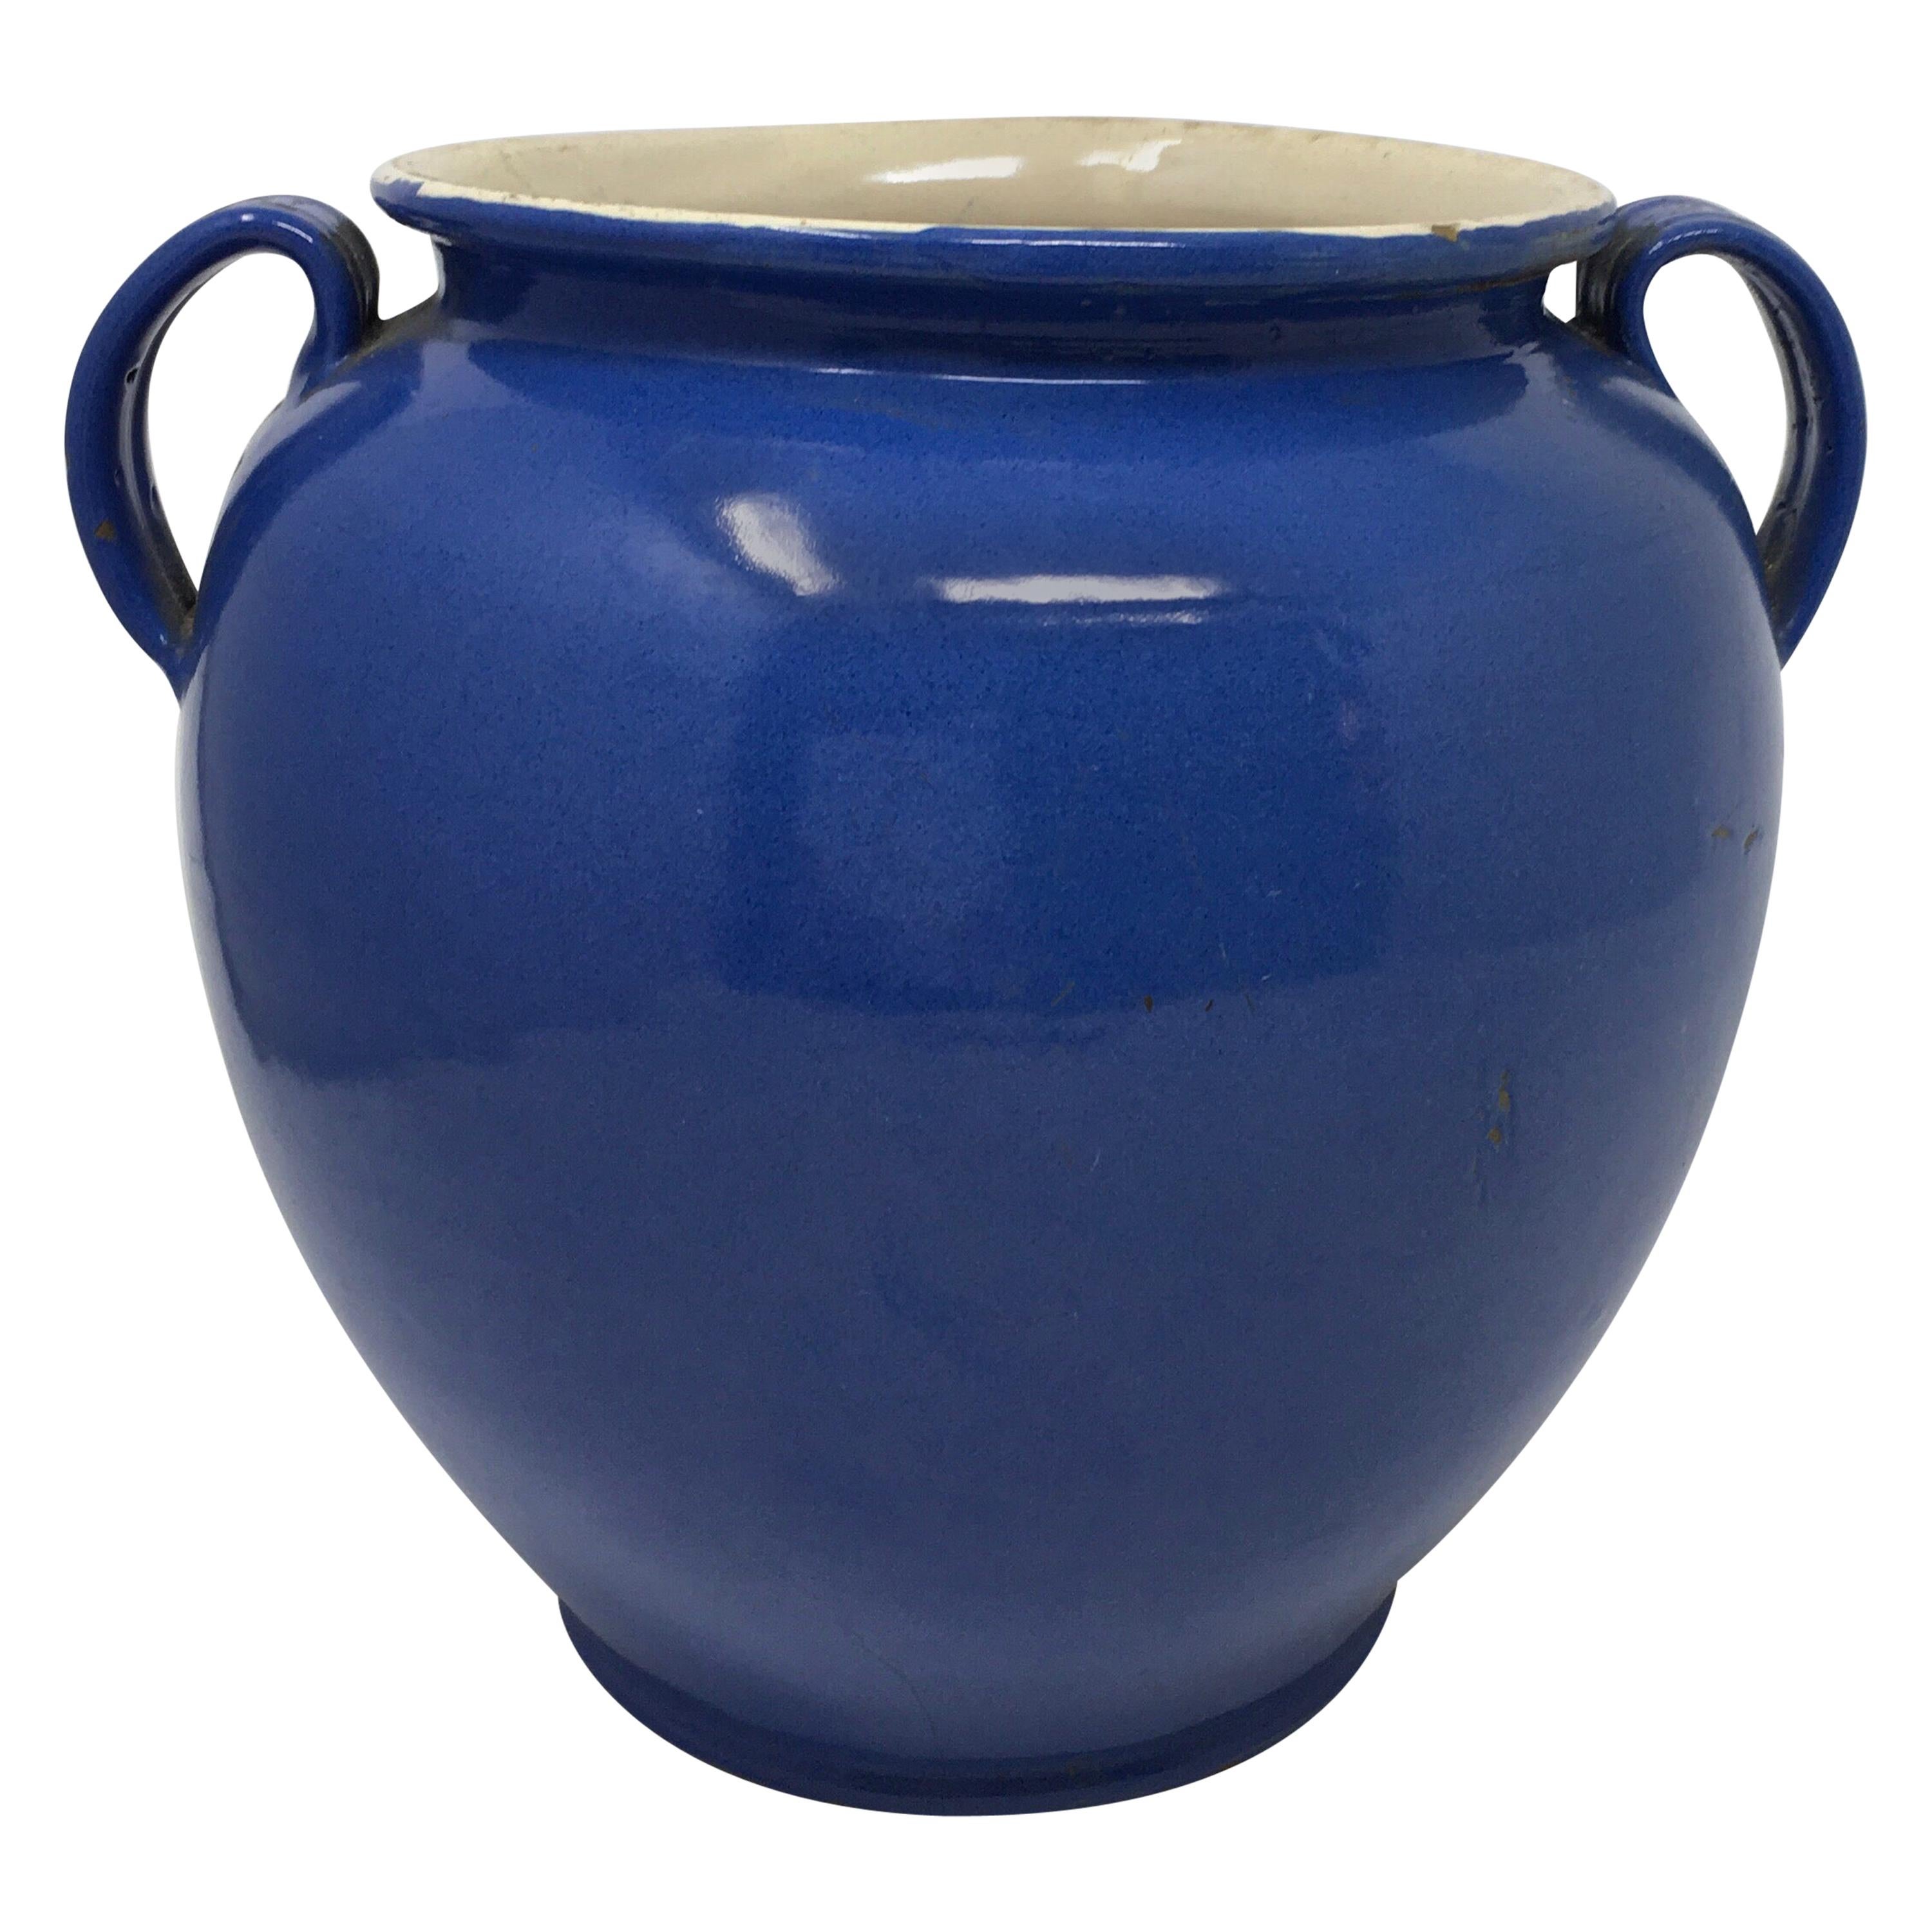 Antique French Blue Handled Confit Pot